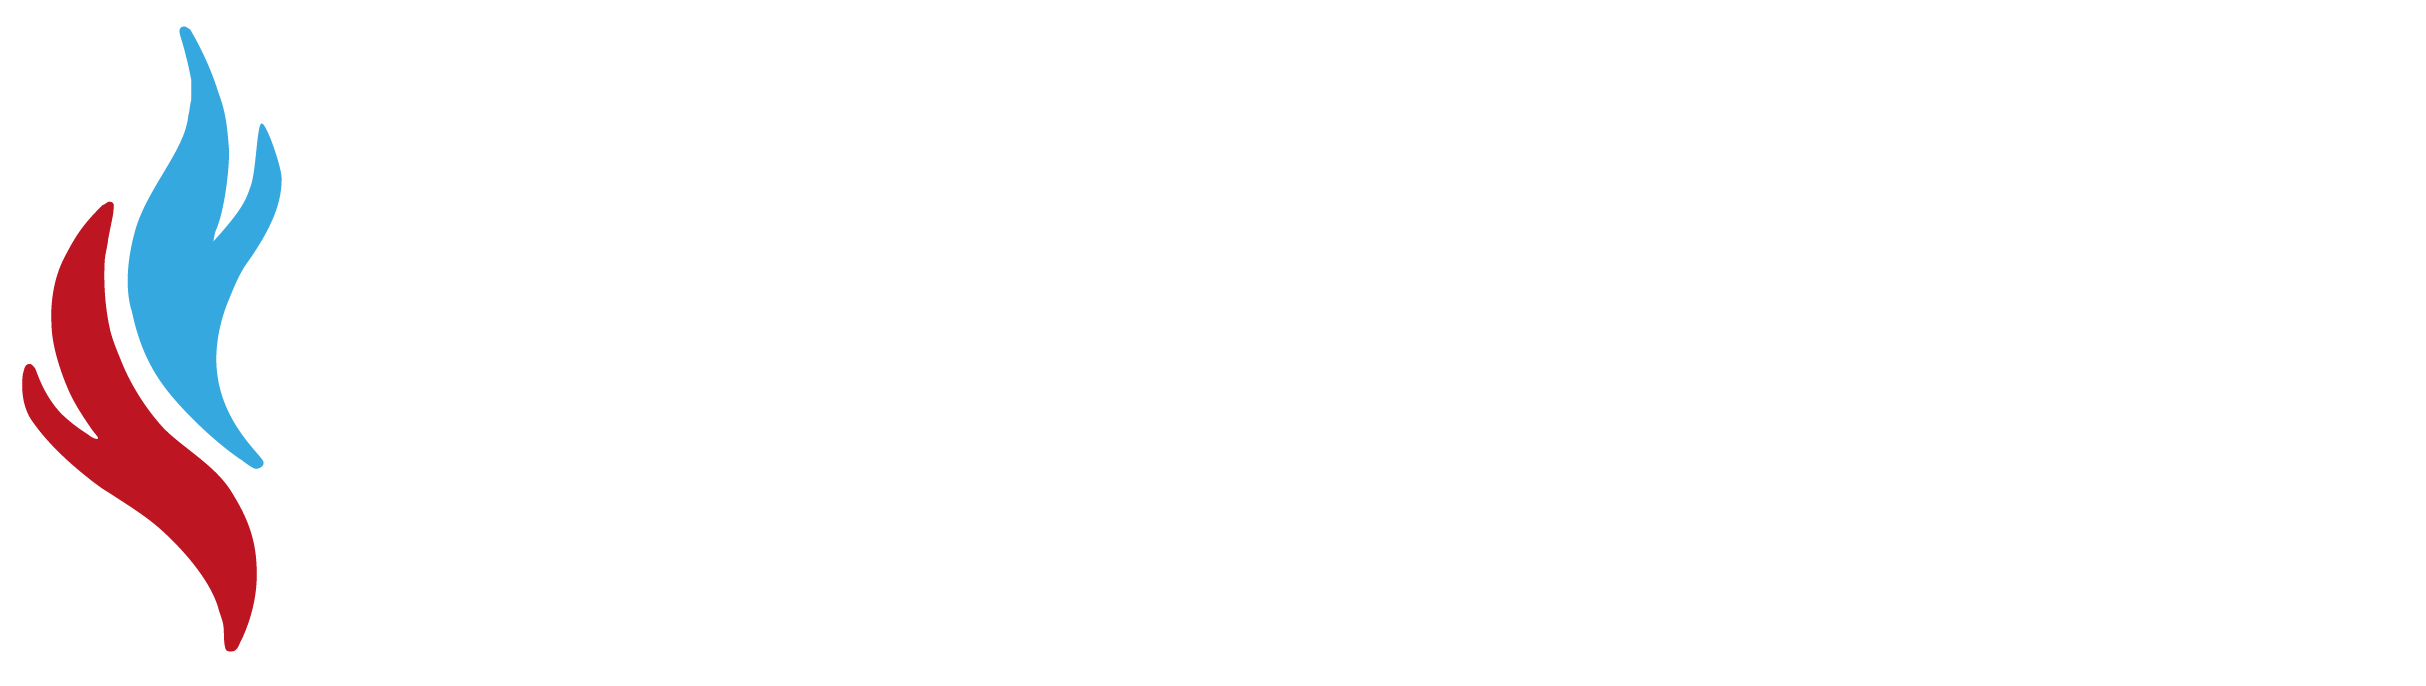 Sarl Morizot Carpentras. Chauffagiste, plombier, Climatisation à Carpentras, Vaucluse